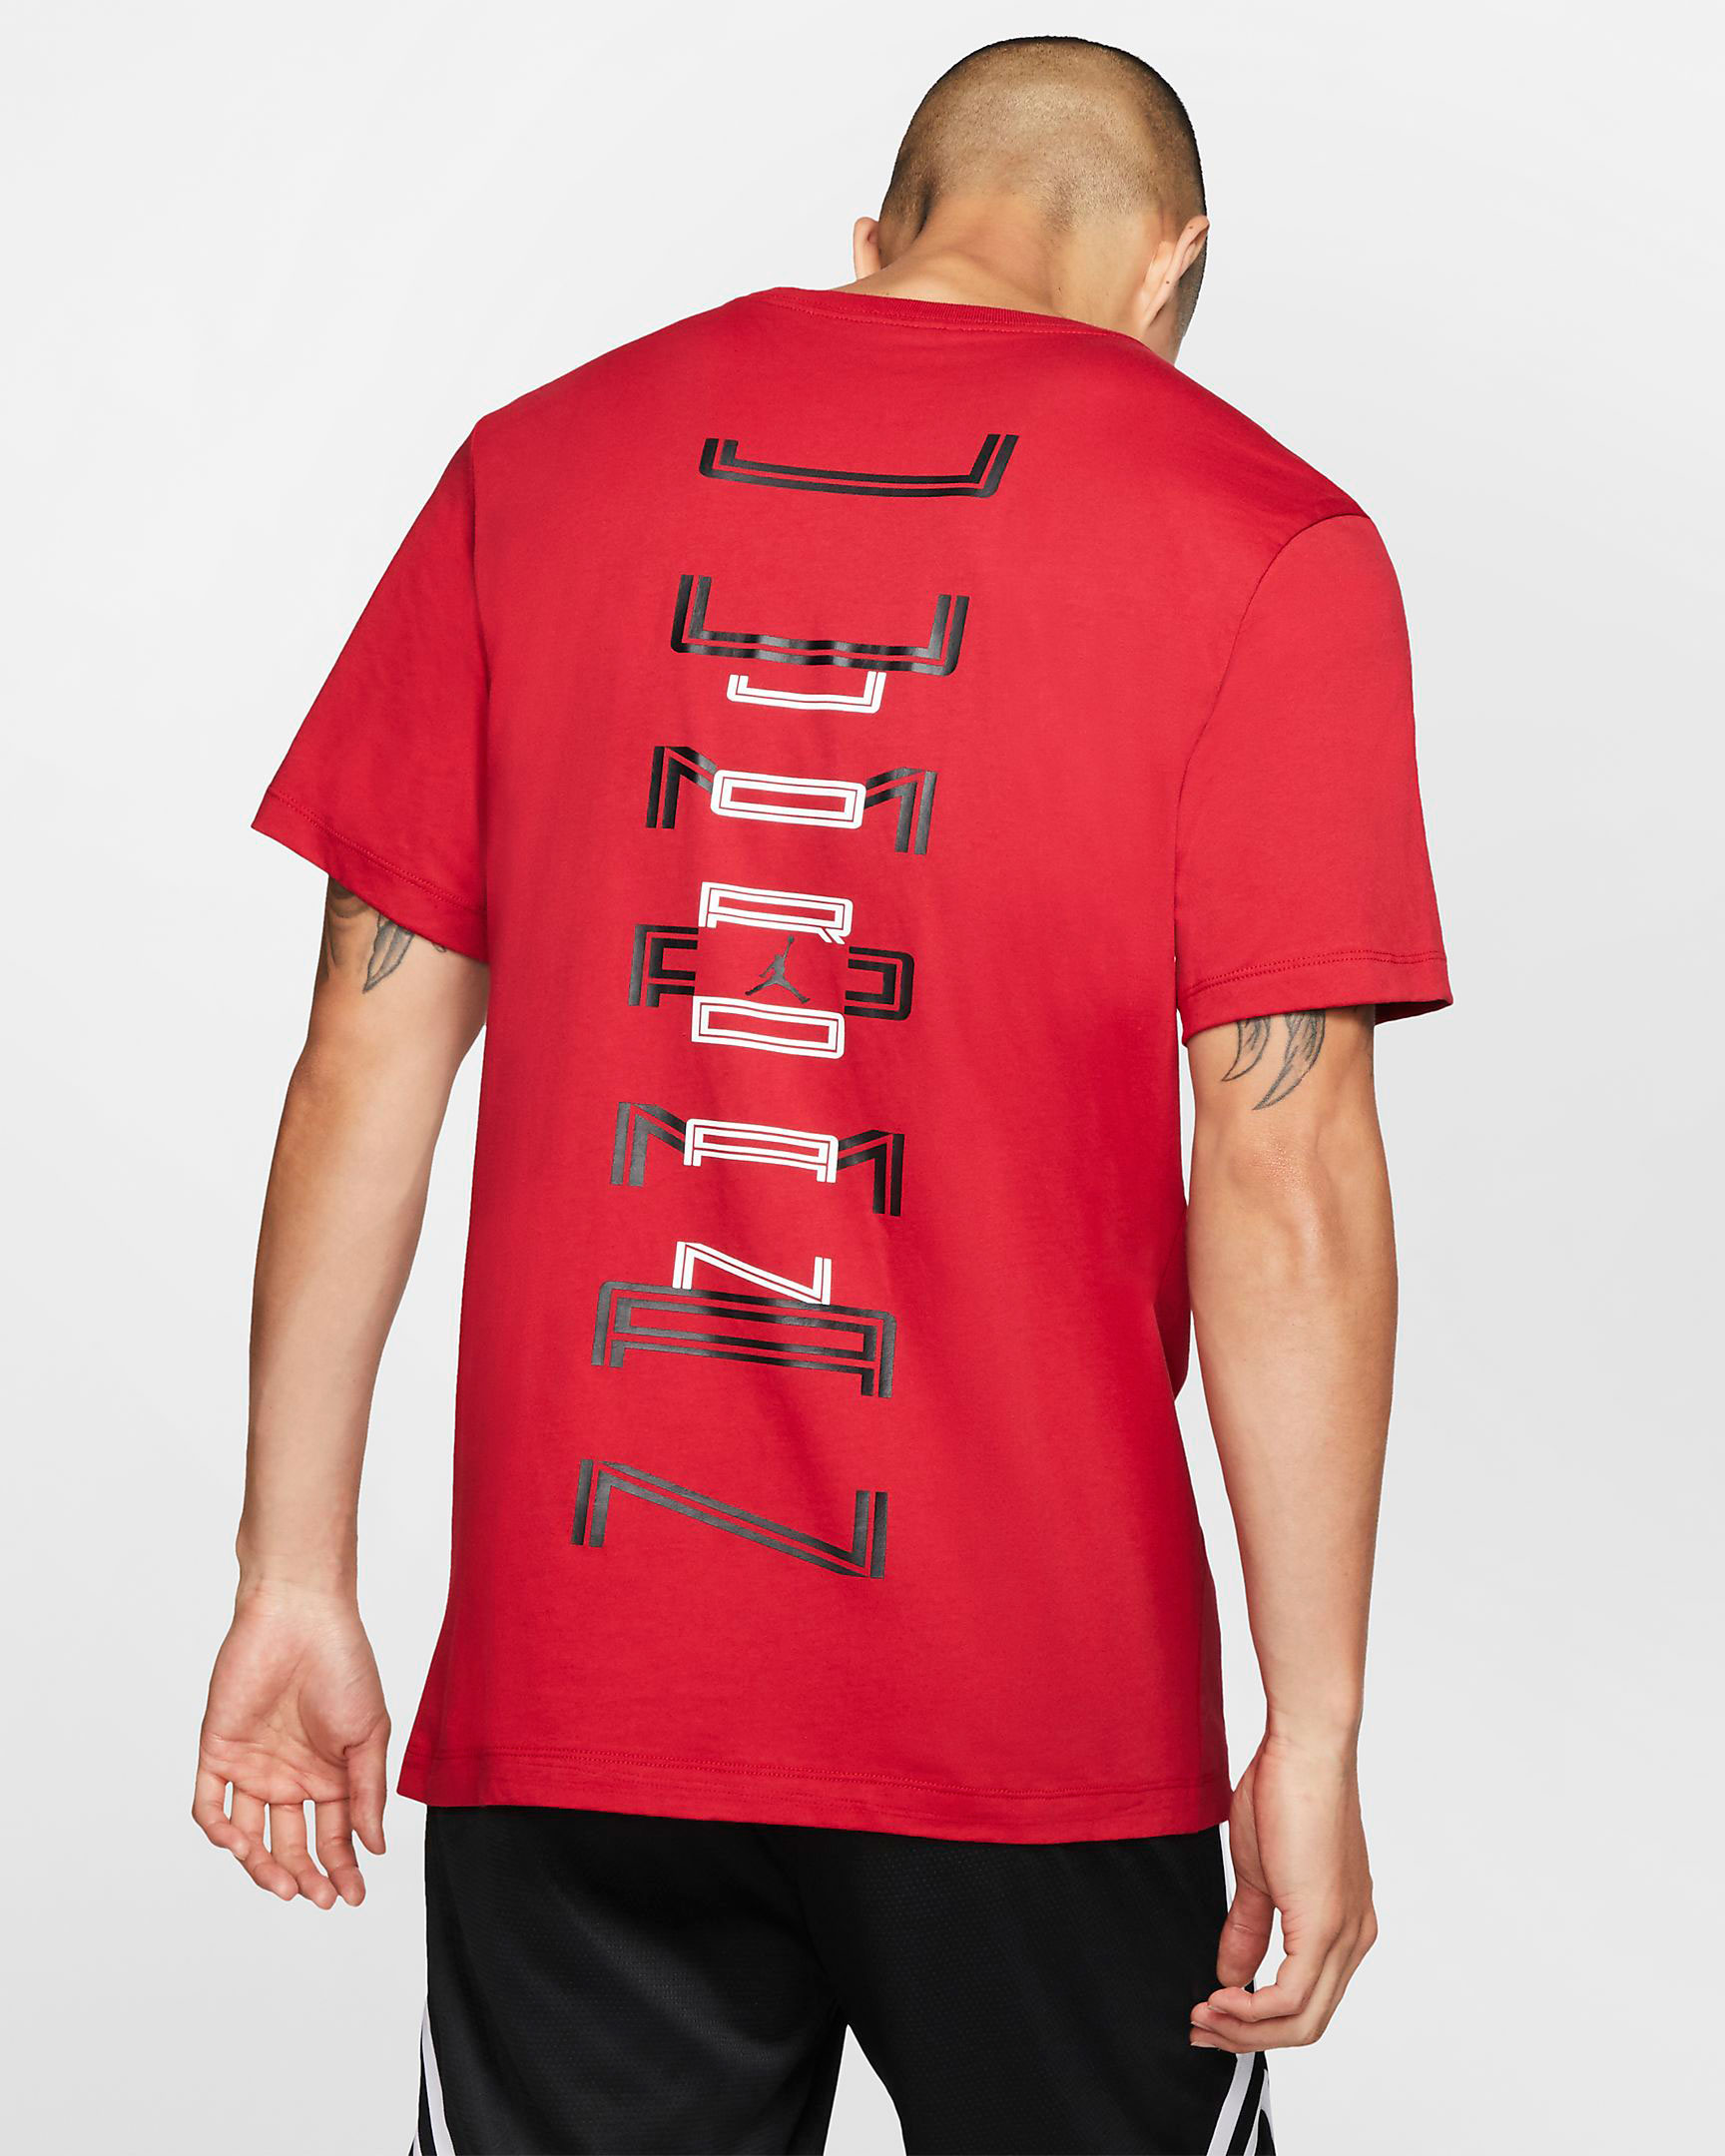 air-jordan-11-bred-2019-tee-shirt-2